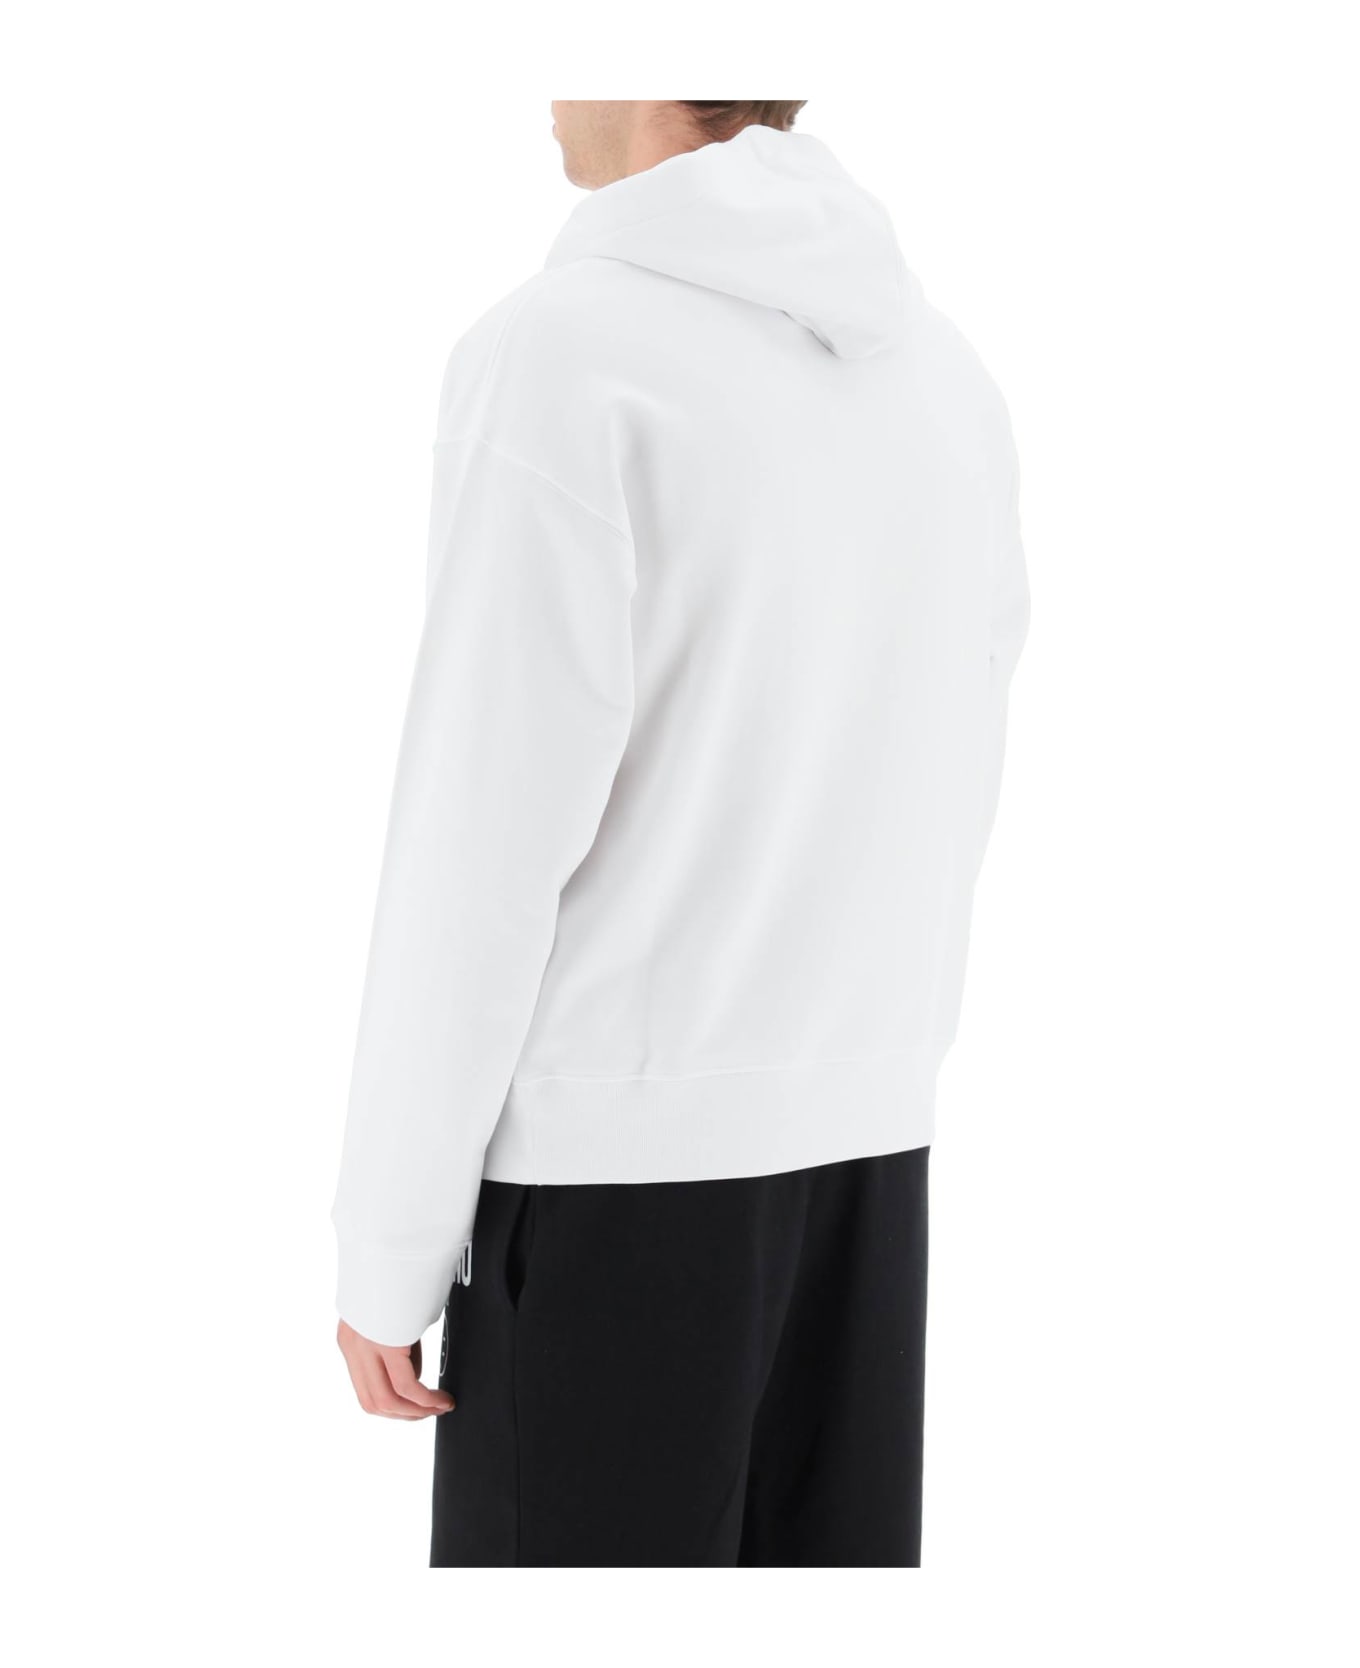 Moschino White Cotton Sweatshirt - 1001